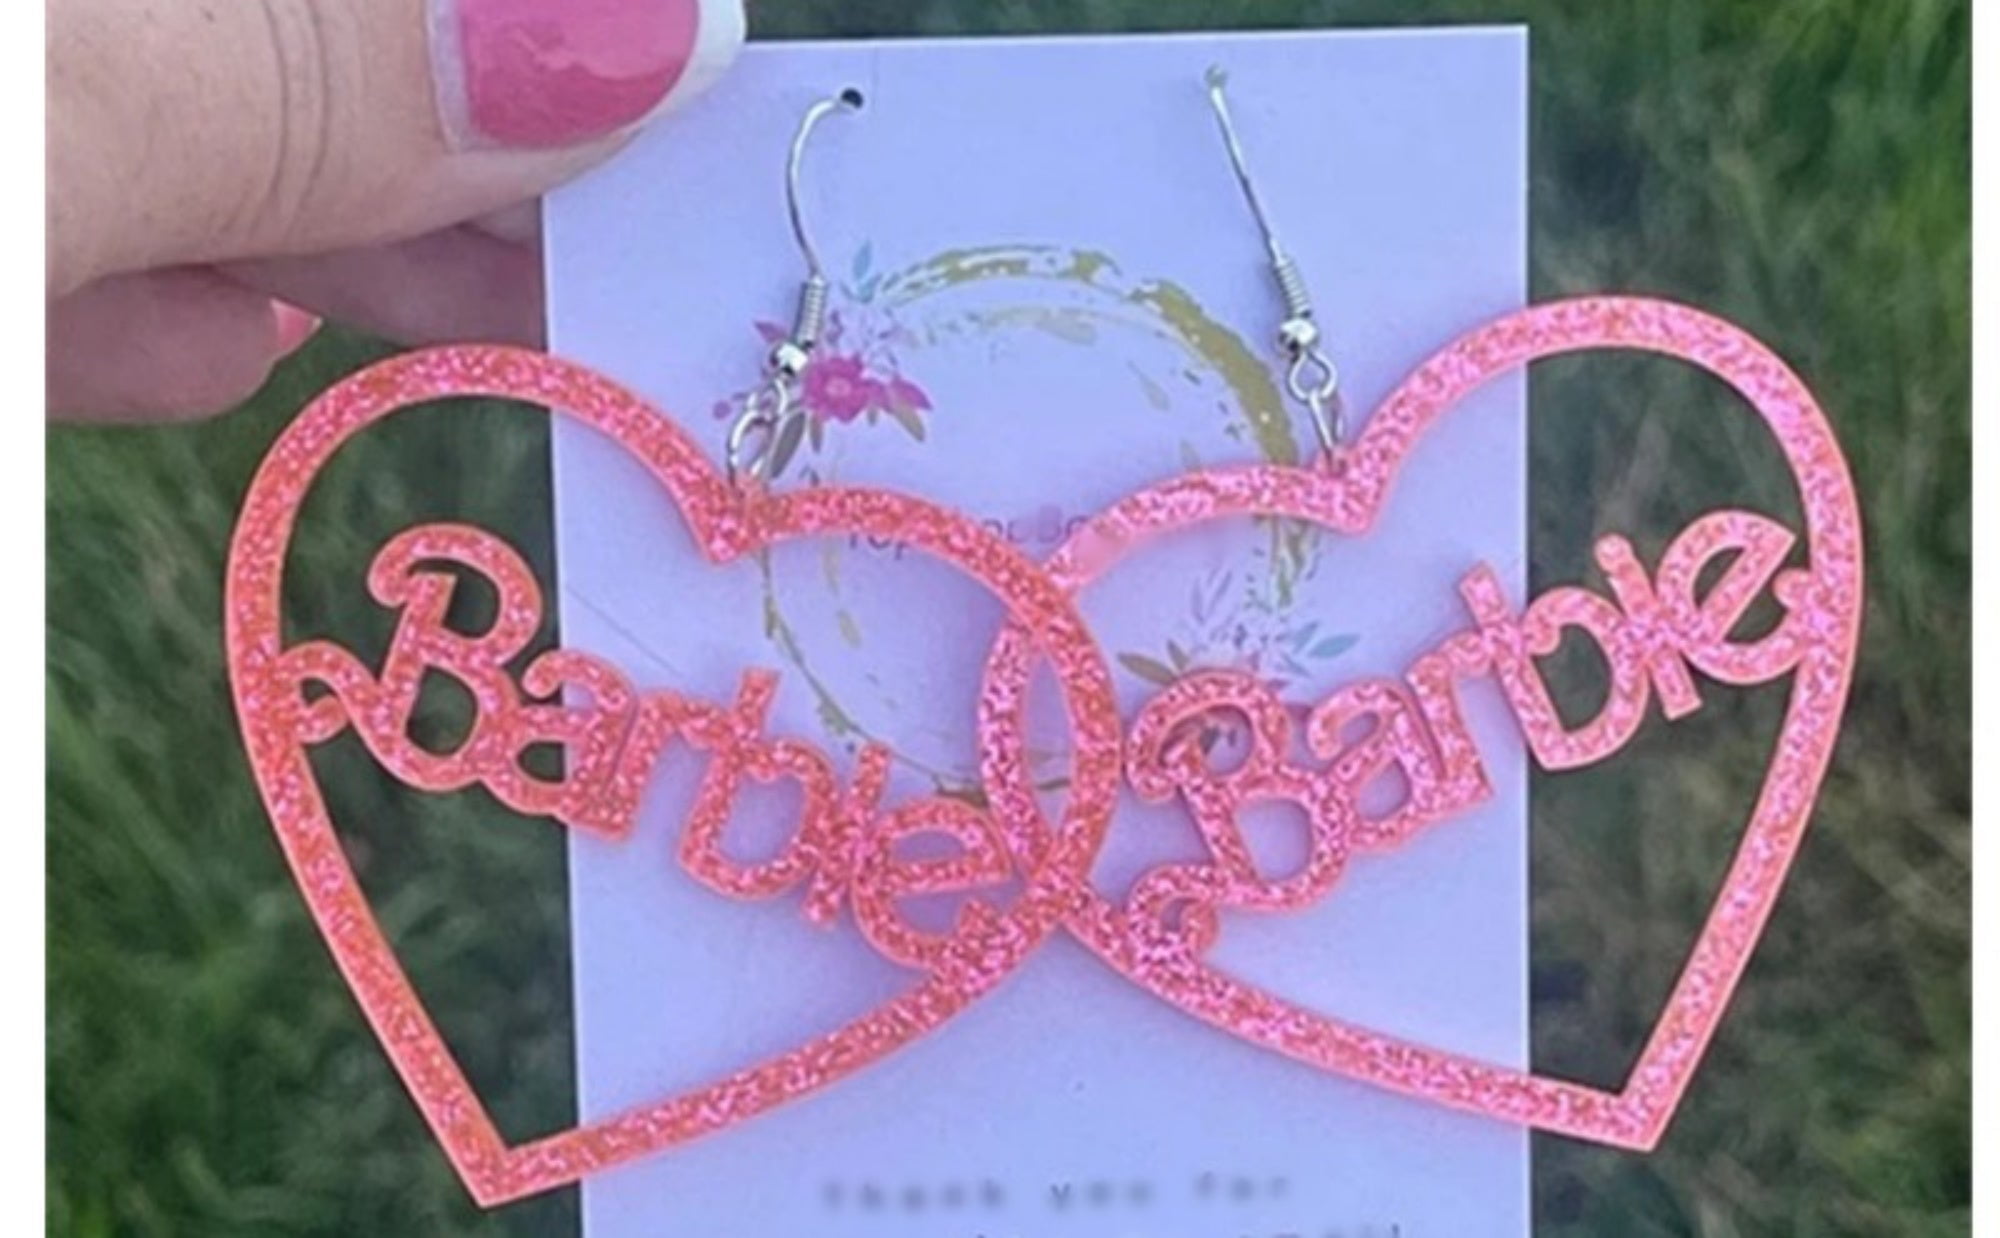 Barbie Earrings Girl Teen and Women Acrylic Barbie Pink Earrings 6846d6ad 5735 4306 8016 7ec67585f7f4.6122288404e8bce6591254253f8775c0